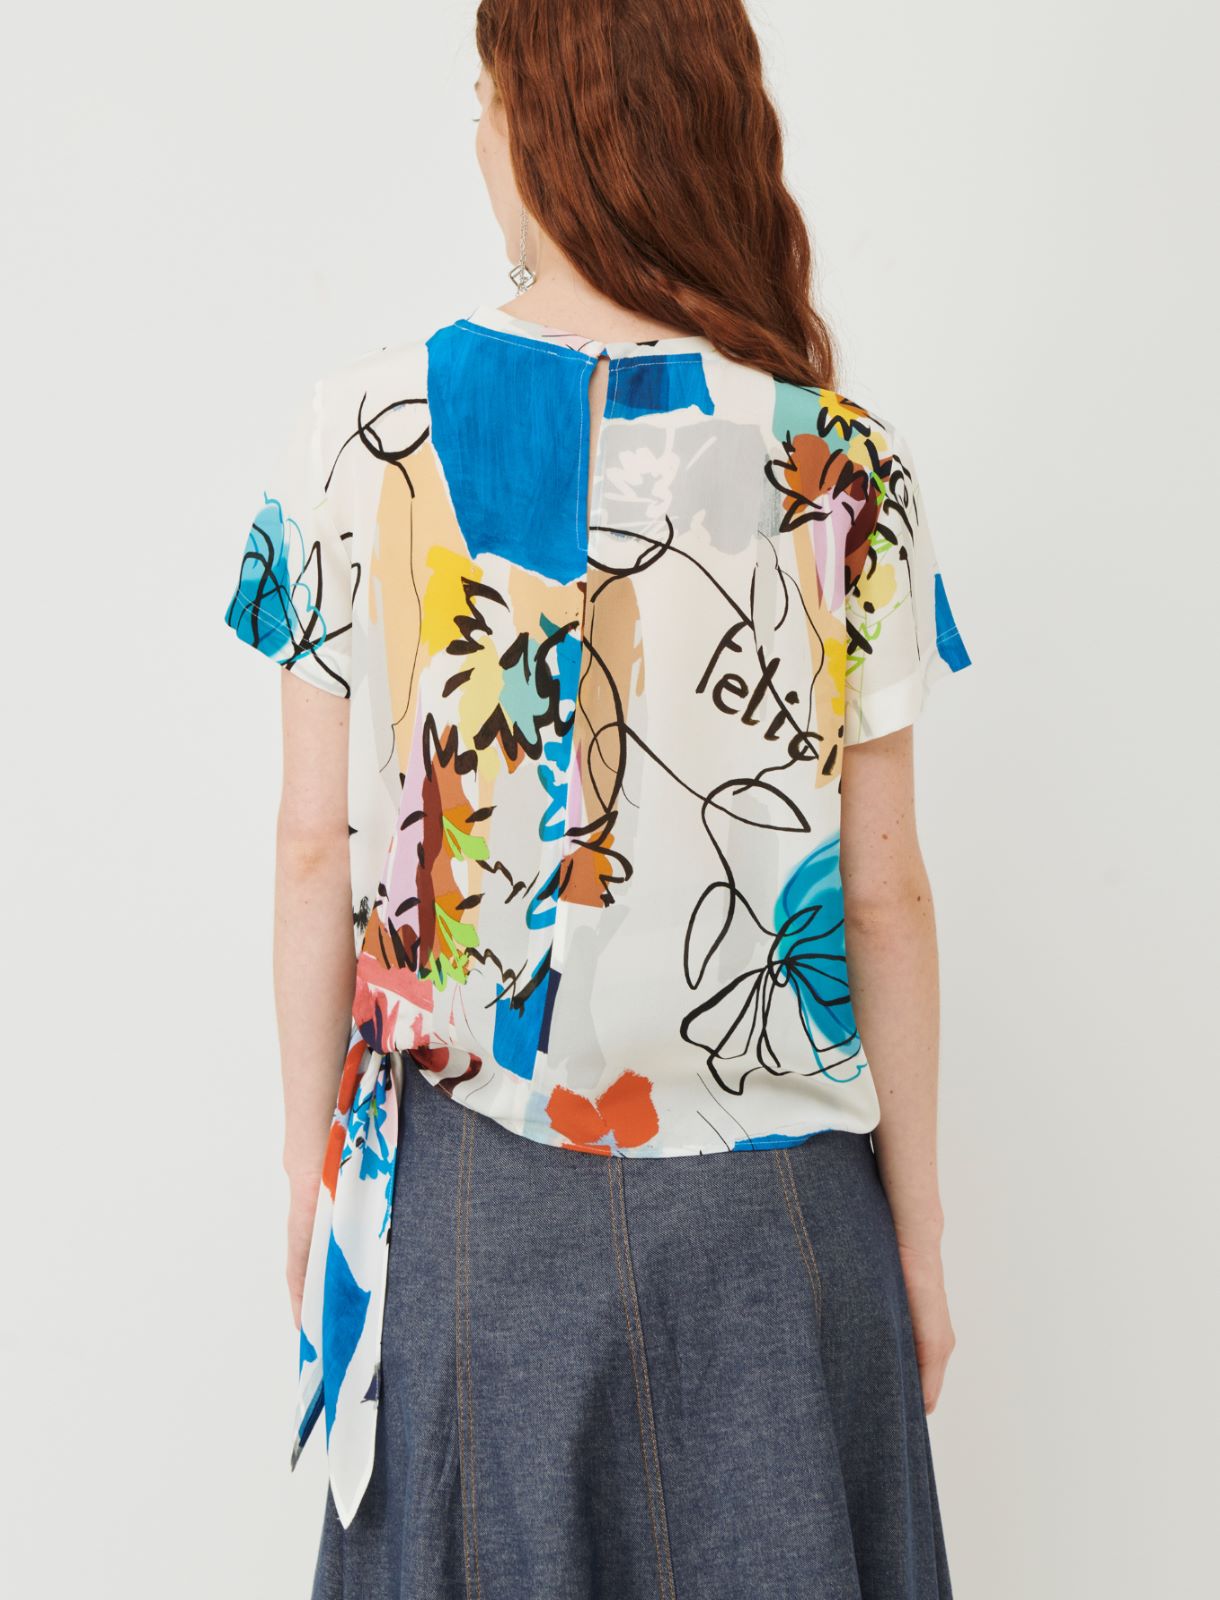 Patterned blouse - Cornflower blue - Marina Rinaldi - 2